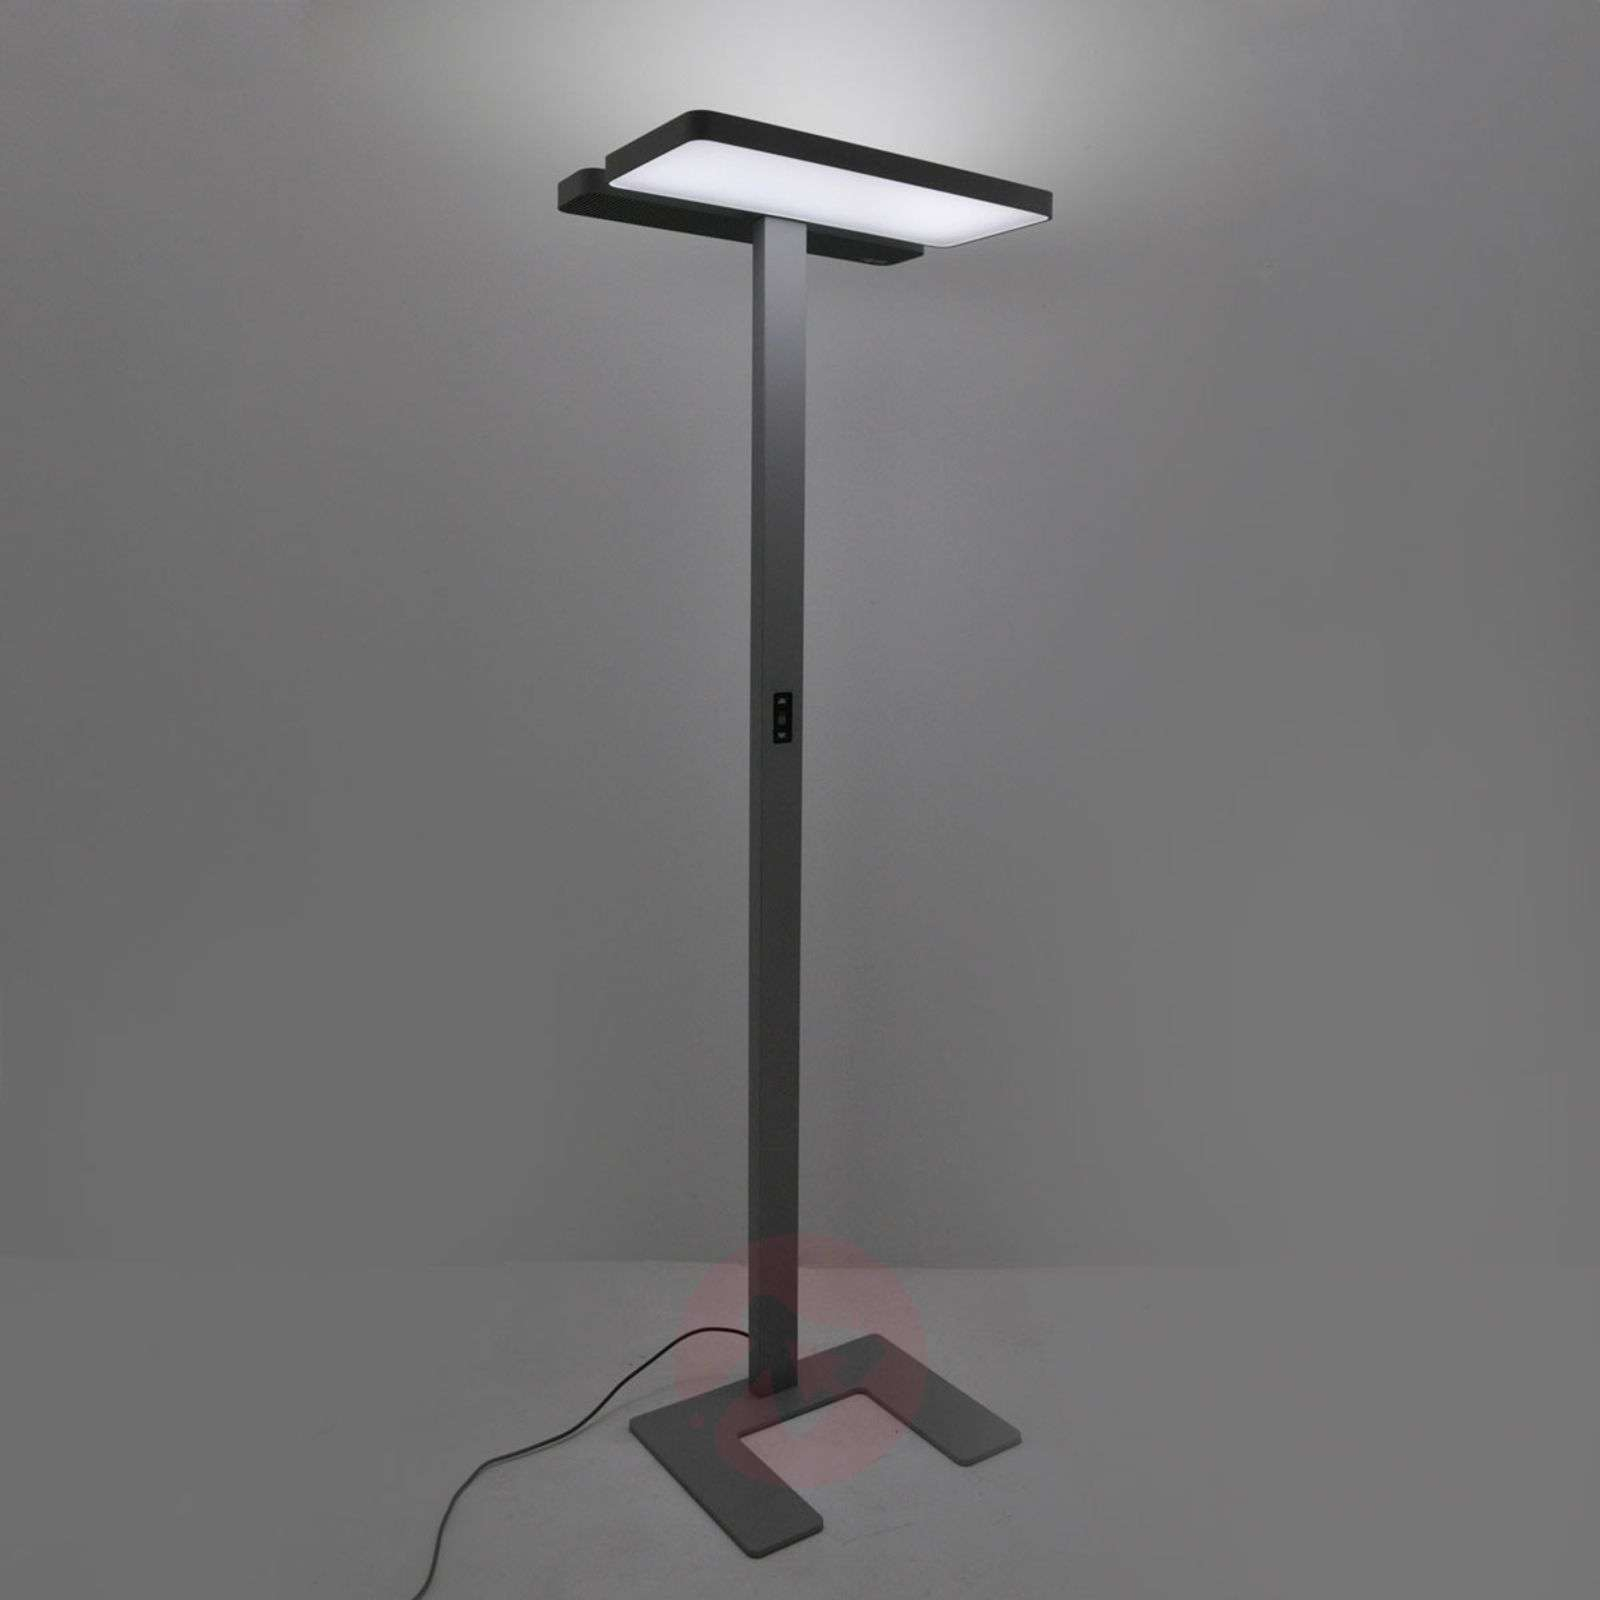 Aila Office Led Floor Lamp Daylight Sensor 4000k intended for dimensions 1600 X 1600